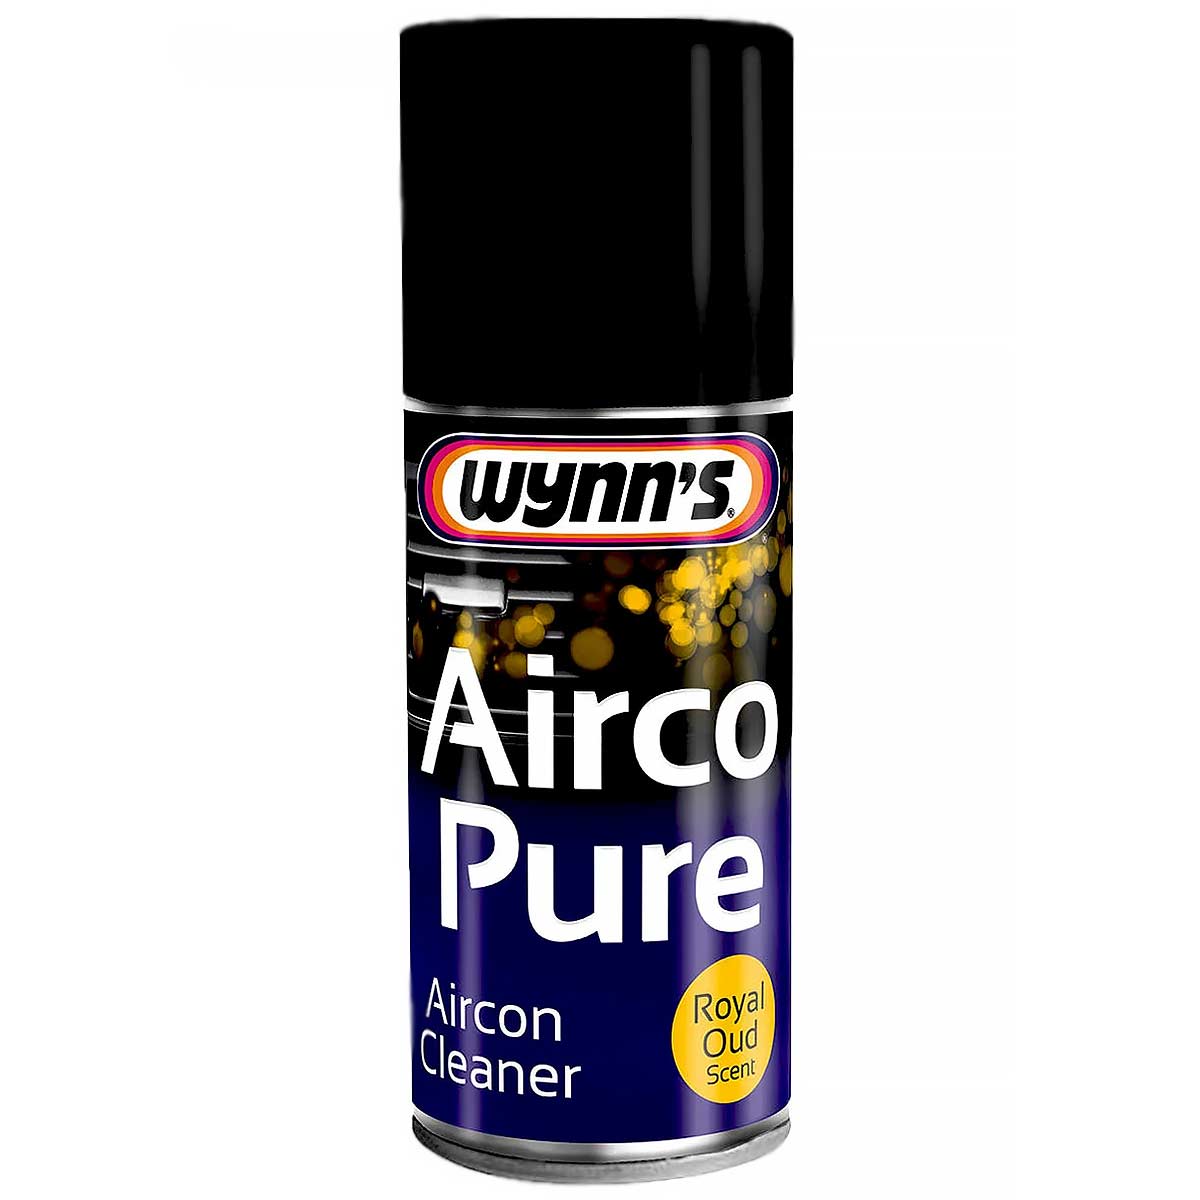 تمیز کننده مجاری کولر و بخاری وینز Wynn’s Airco Pure